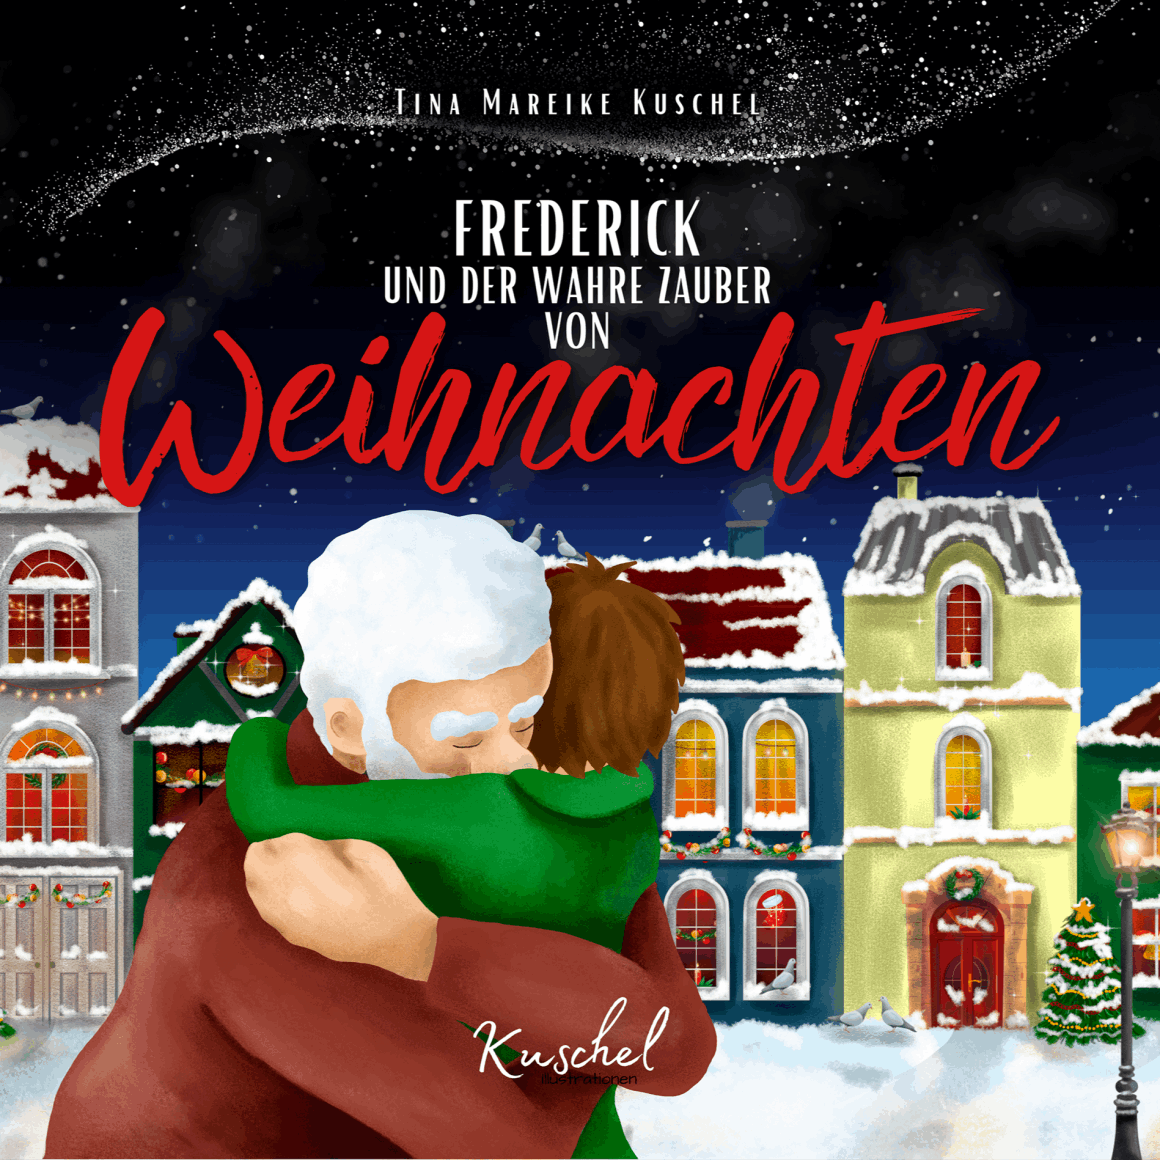 Frederick und der wahre Zauber von Weihnachten - Von Tina Mareike Kuschel